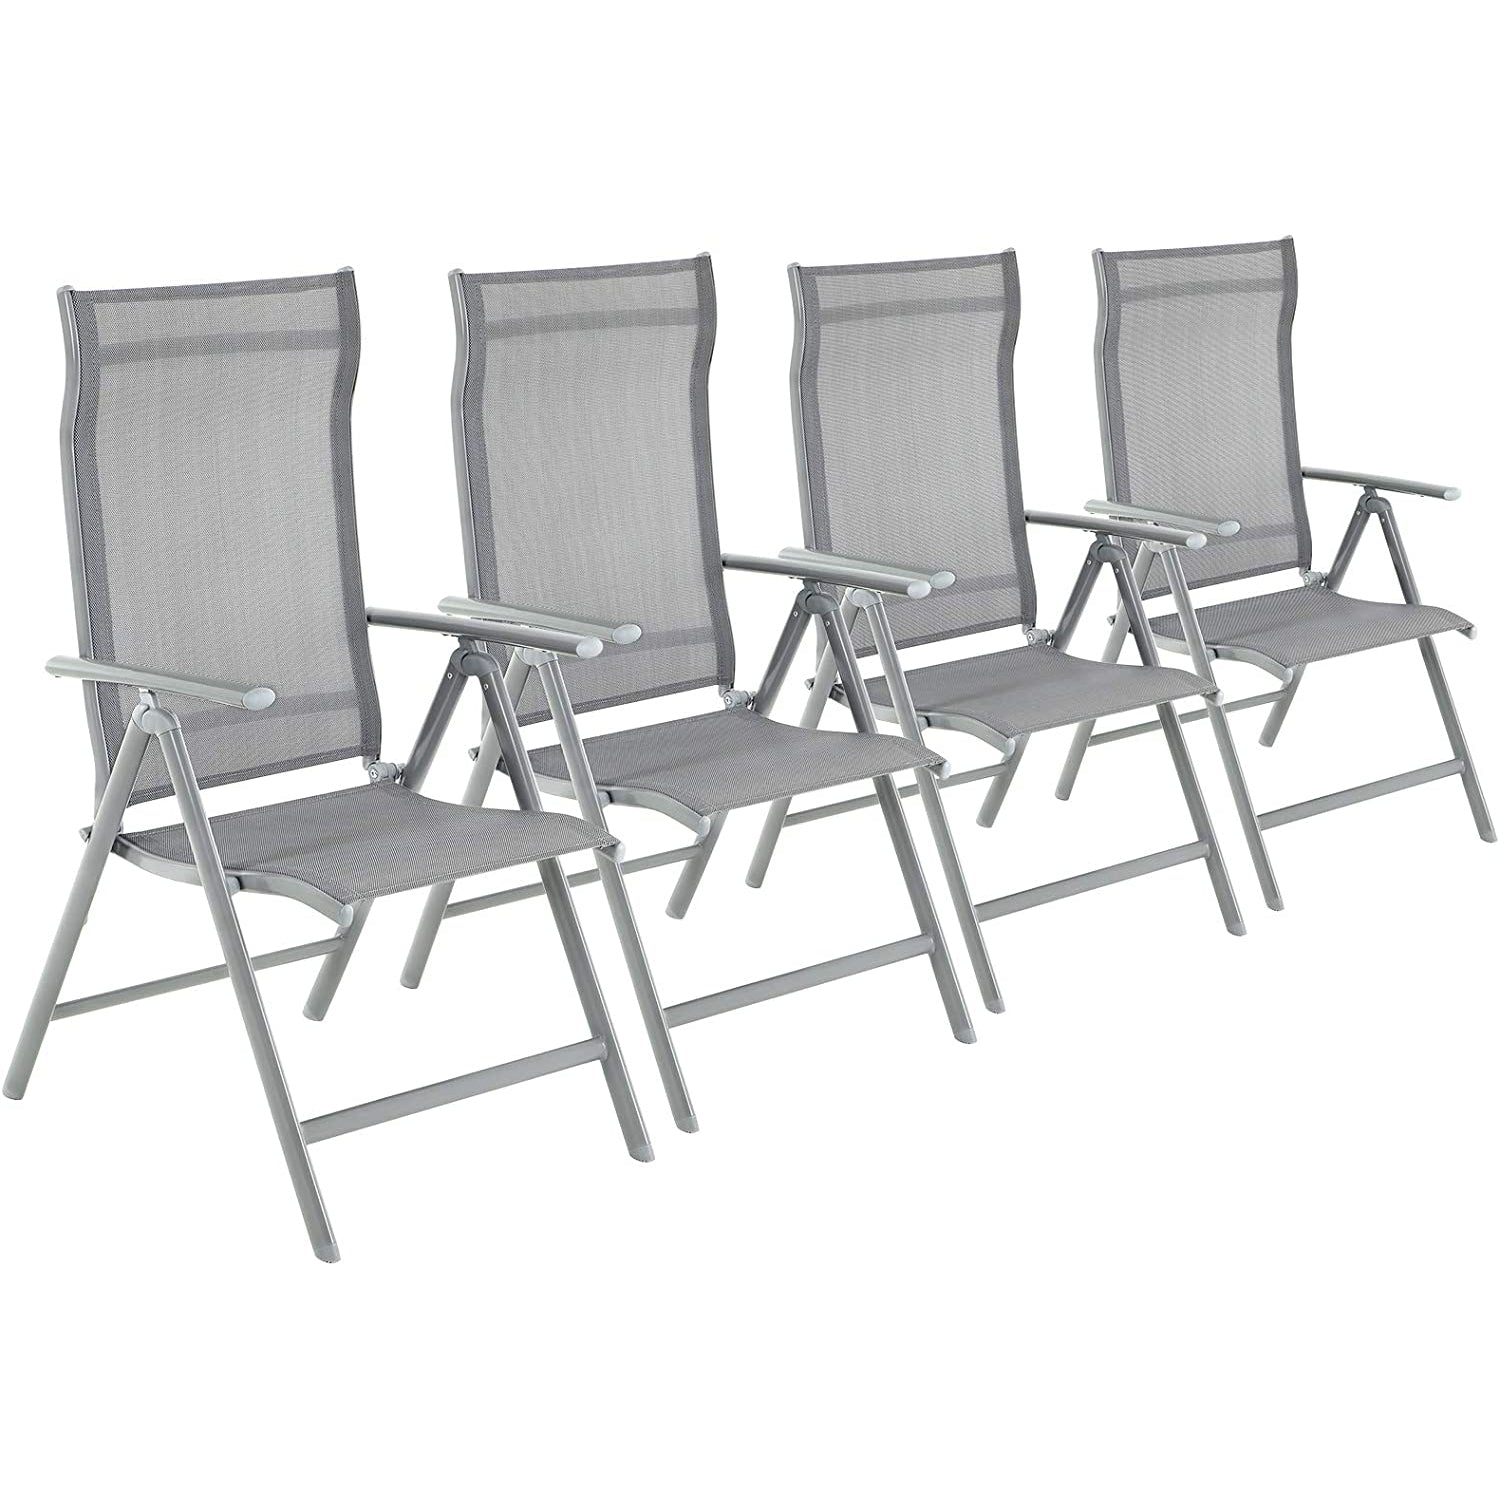 Chaises de jardin Nancy's Betonville - Lot de 4 - Chaises pliantes - Chaises d'extérieur - Cadre en aluminium - Dossier réglable - Gris